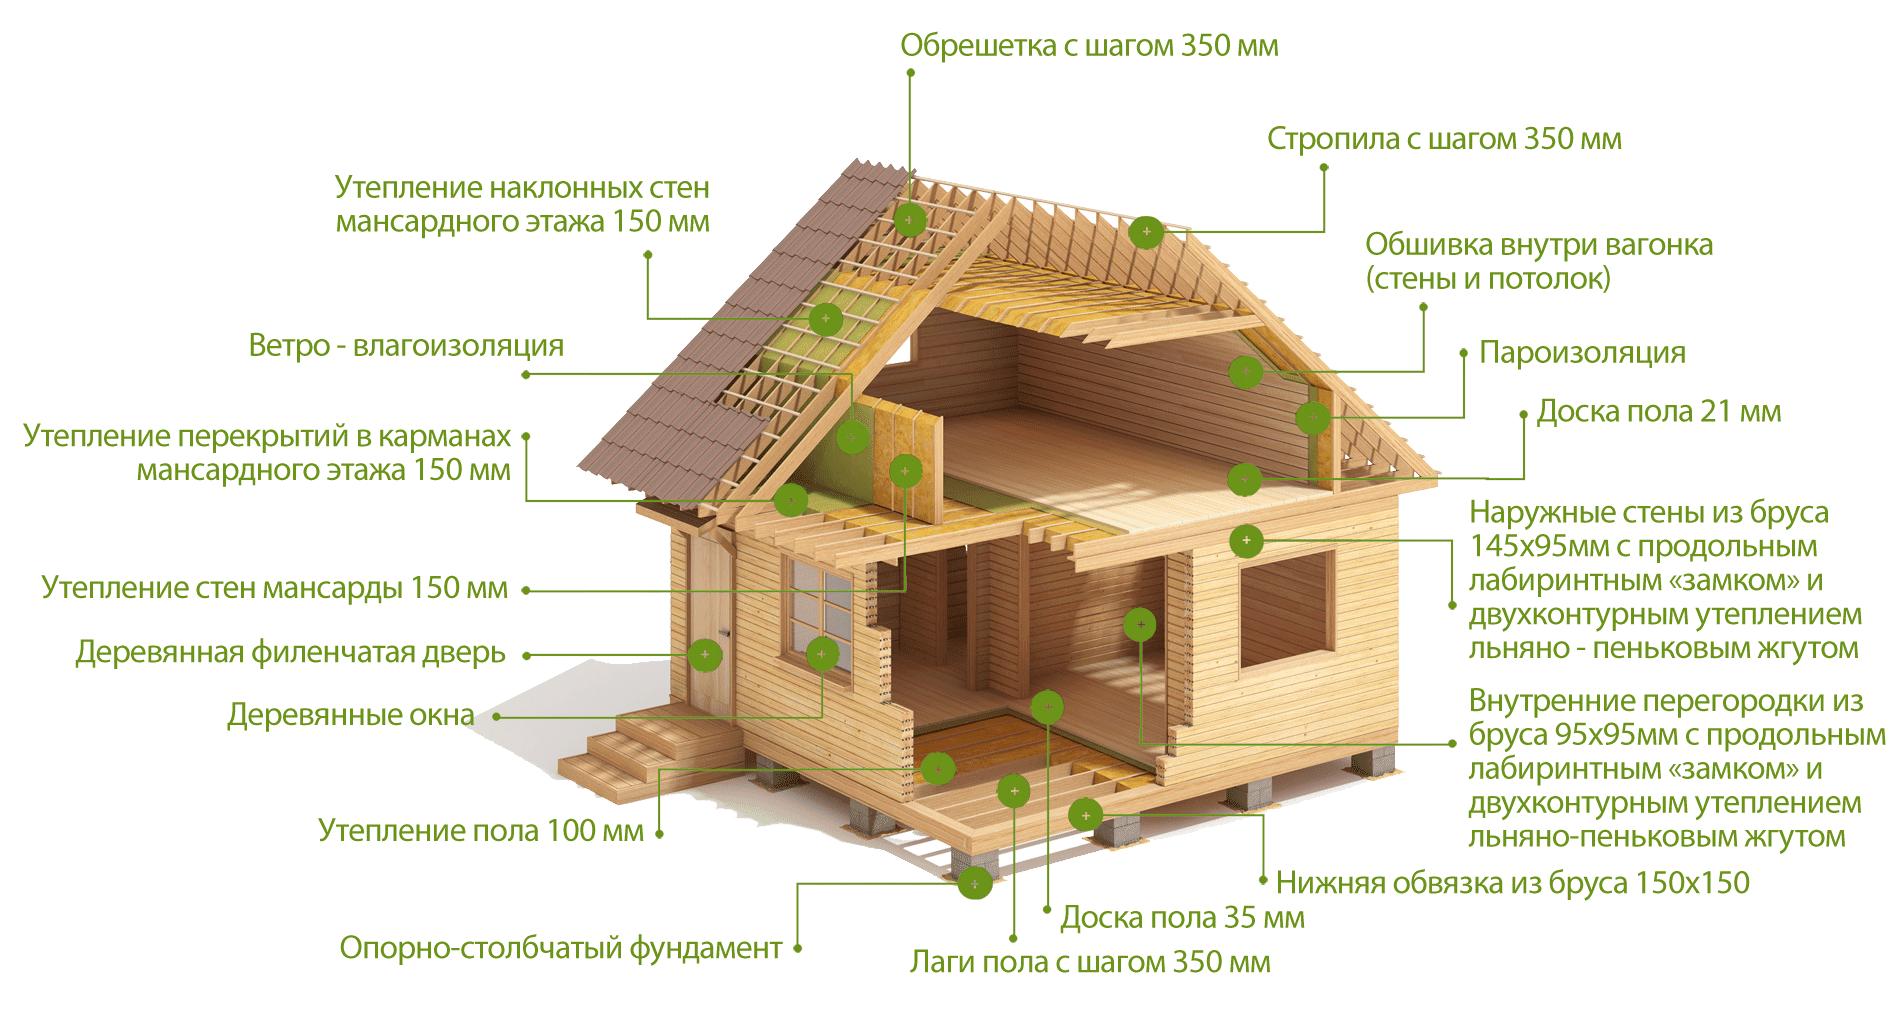 Строительство дома своими руками - школа строительного мастерства